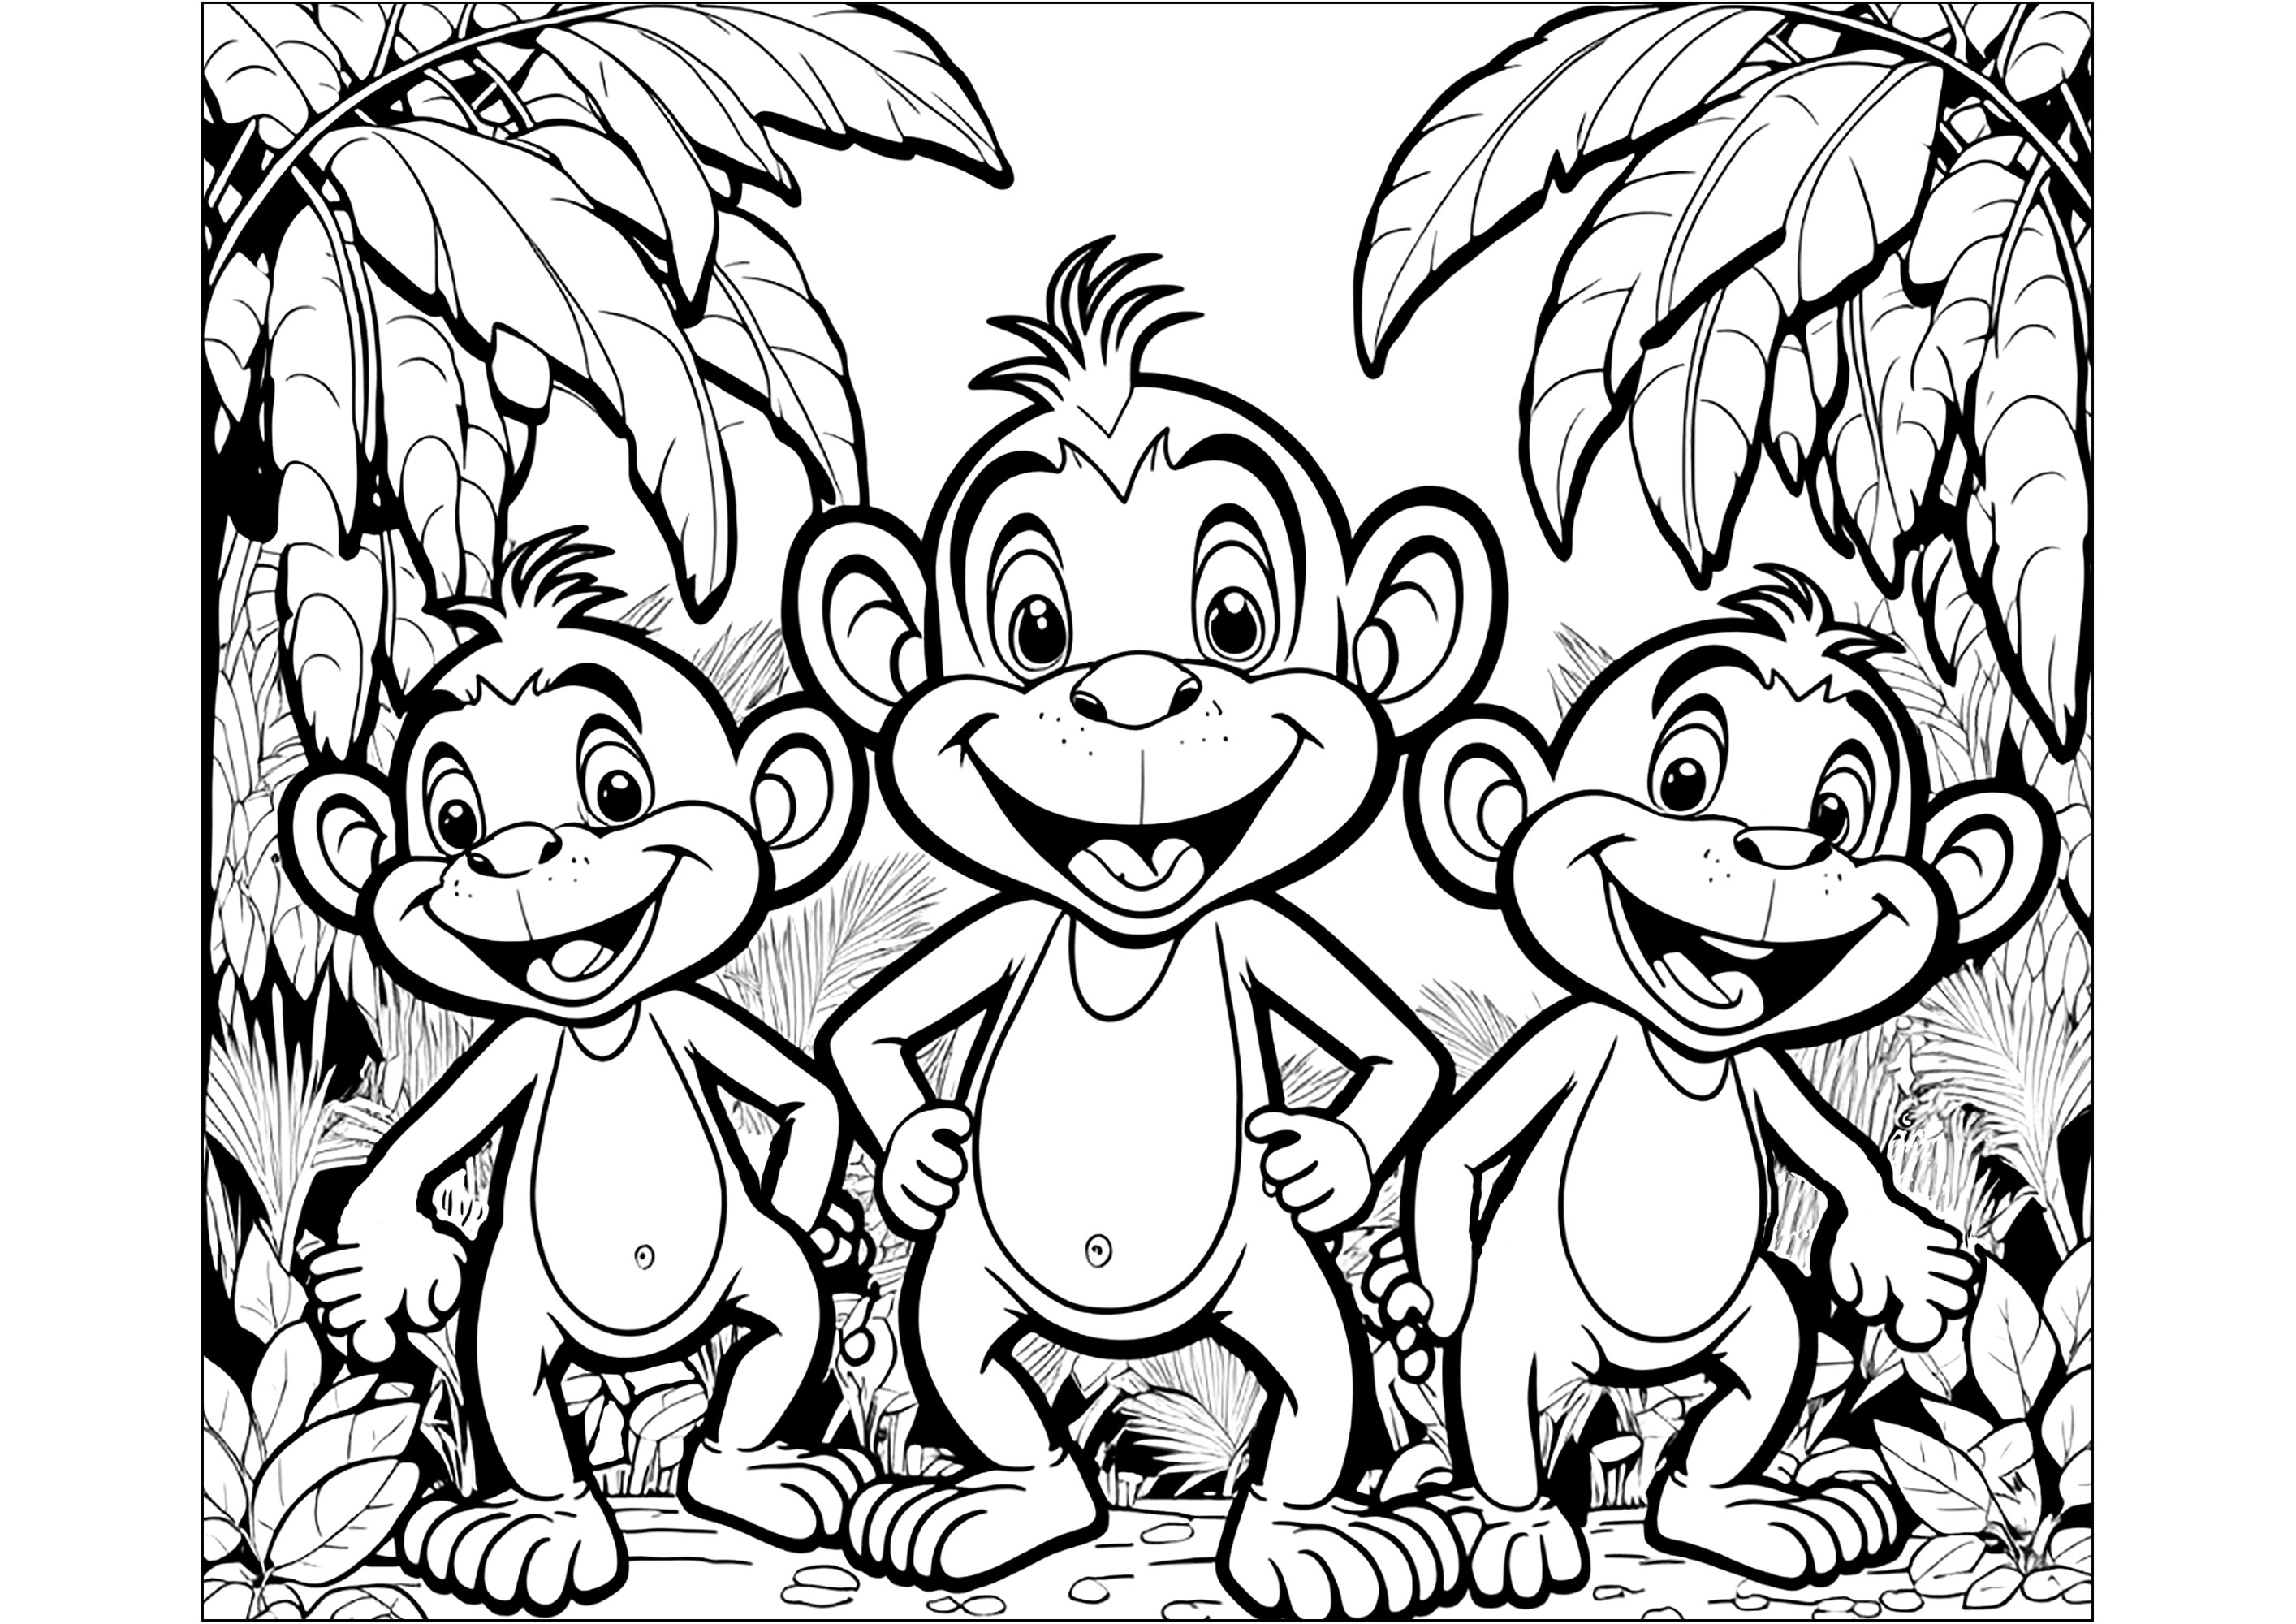 Coloriages de trois jeunes singes dans la jungle. Ce coloriage est parfait pour les enfants qui aiment les animaux et la nature. Il montre trois jeunes singes qui s'amusent dans la jungle. Ce coloriage est parfait pour développer leur imagination et leur créativité.